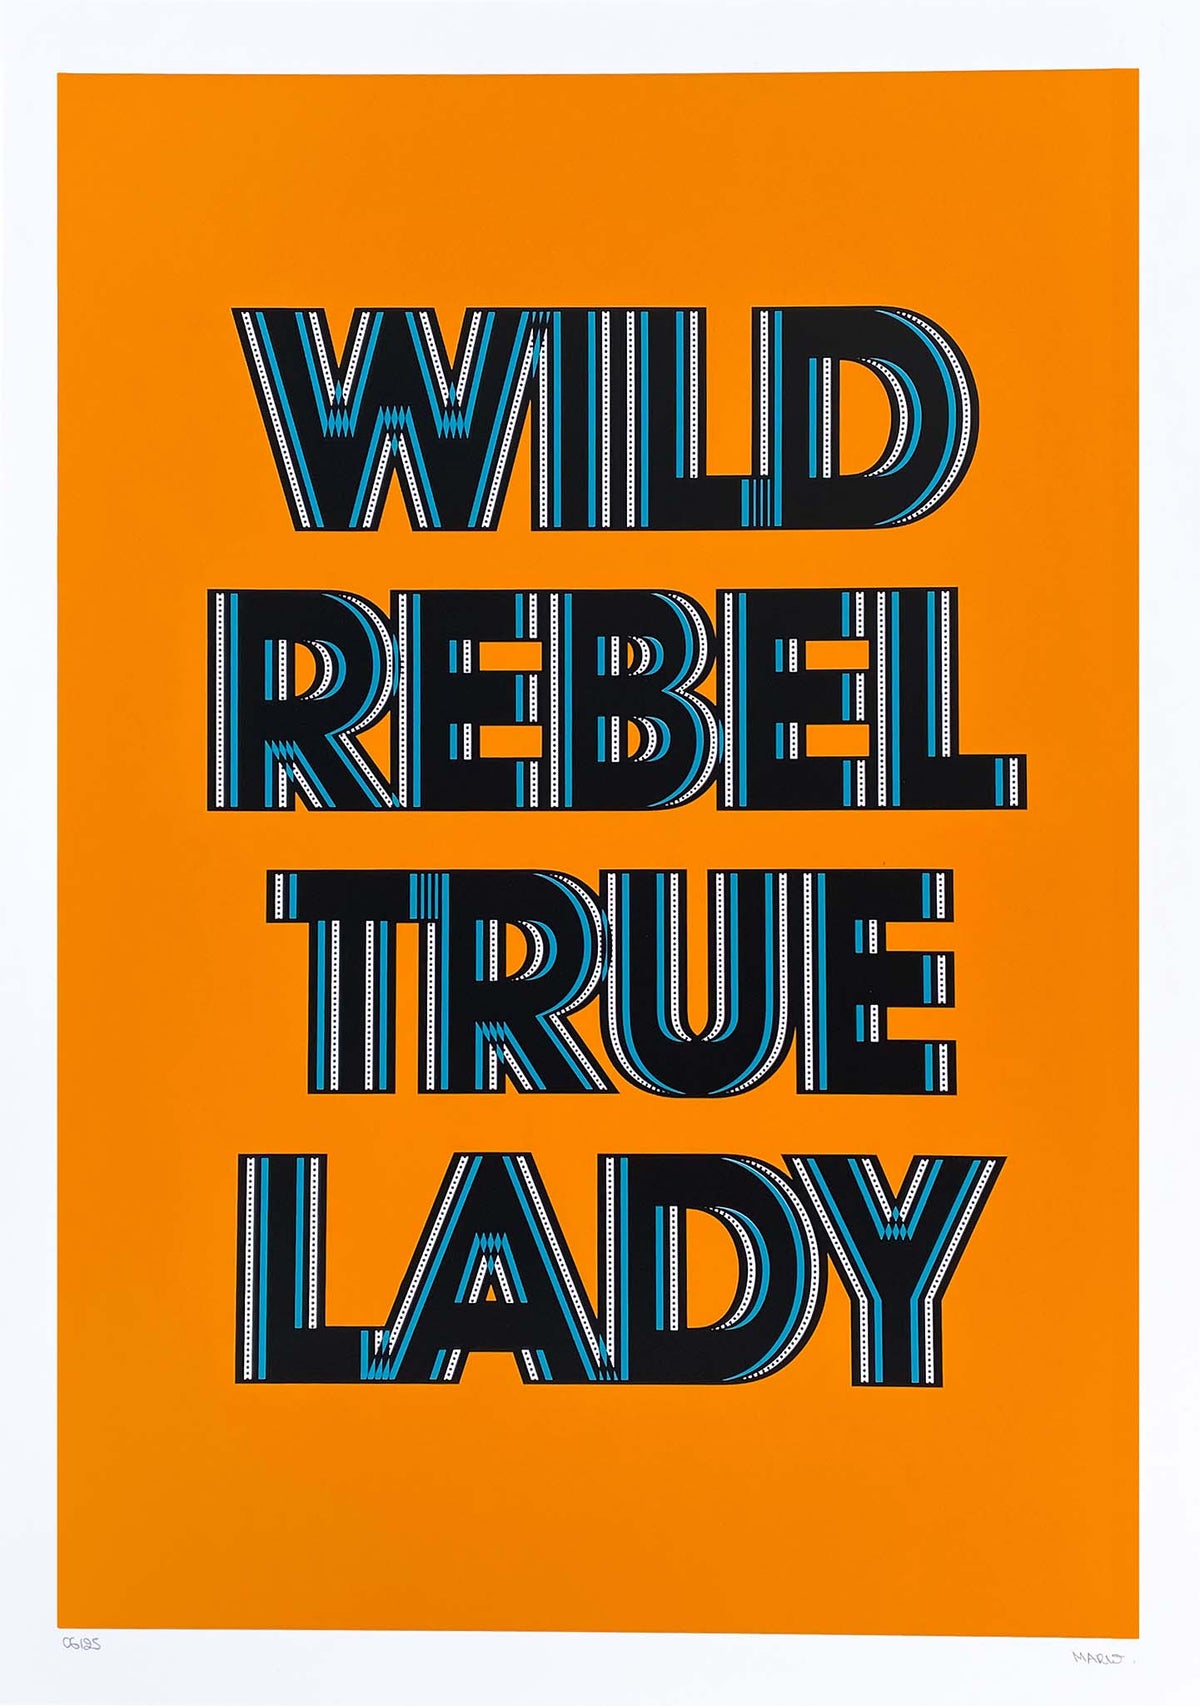 Wild Rebel True Lady